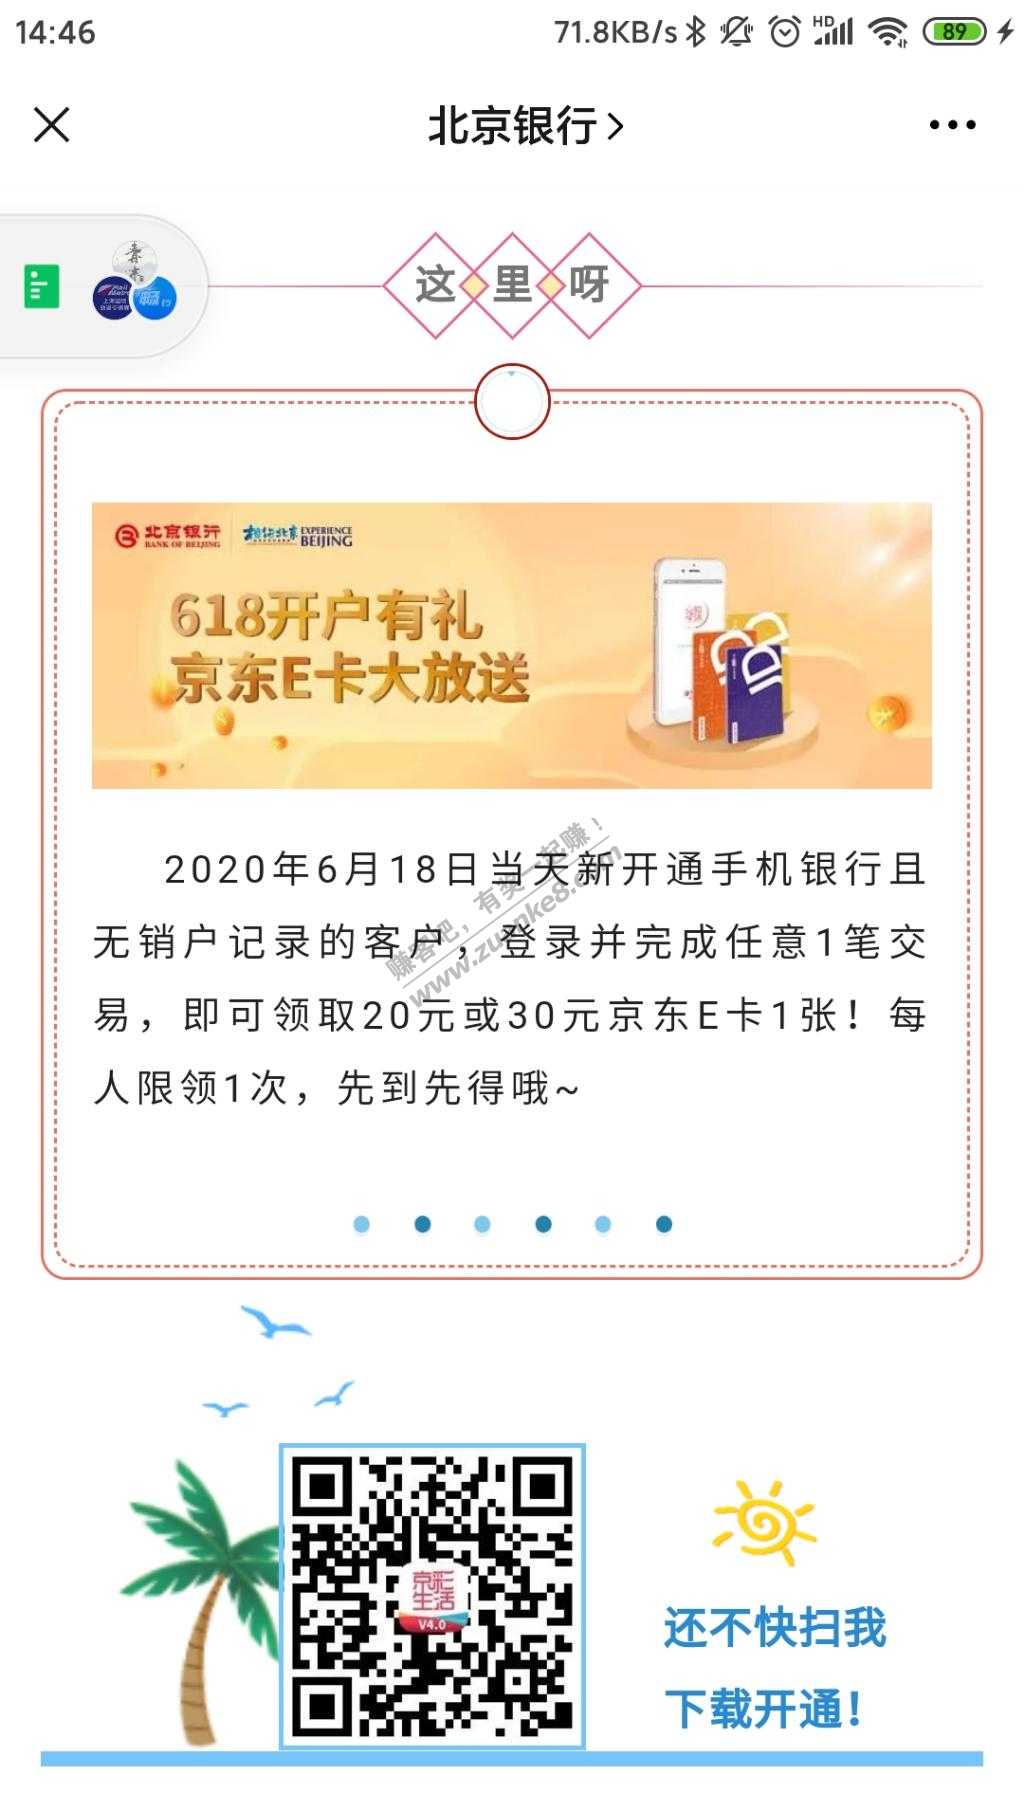 北京银行 20/30E卡-惠小助(52huixz.com)